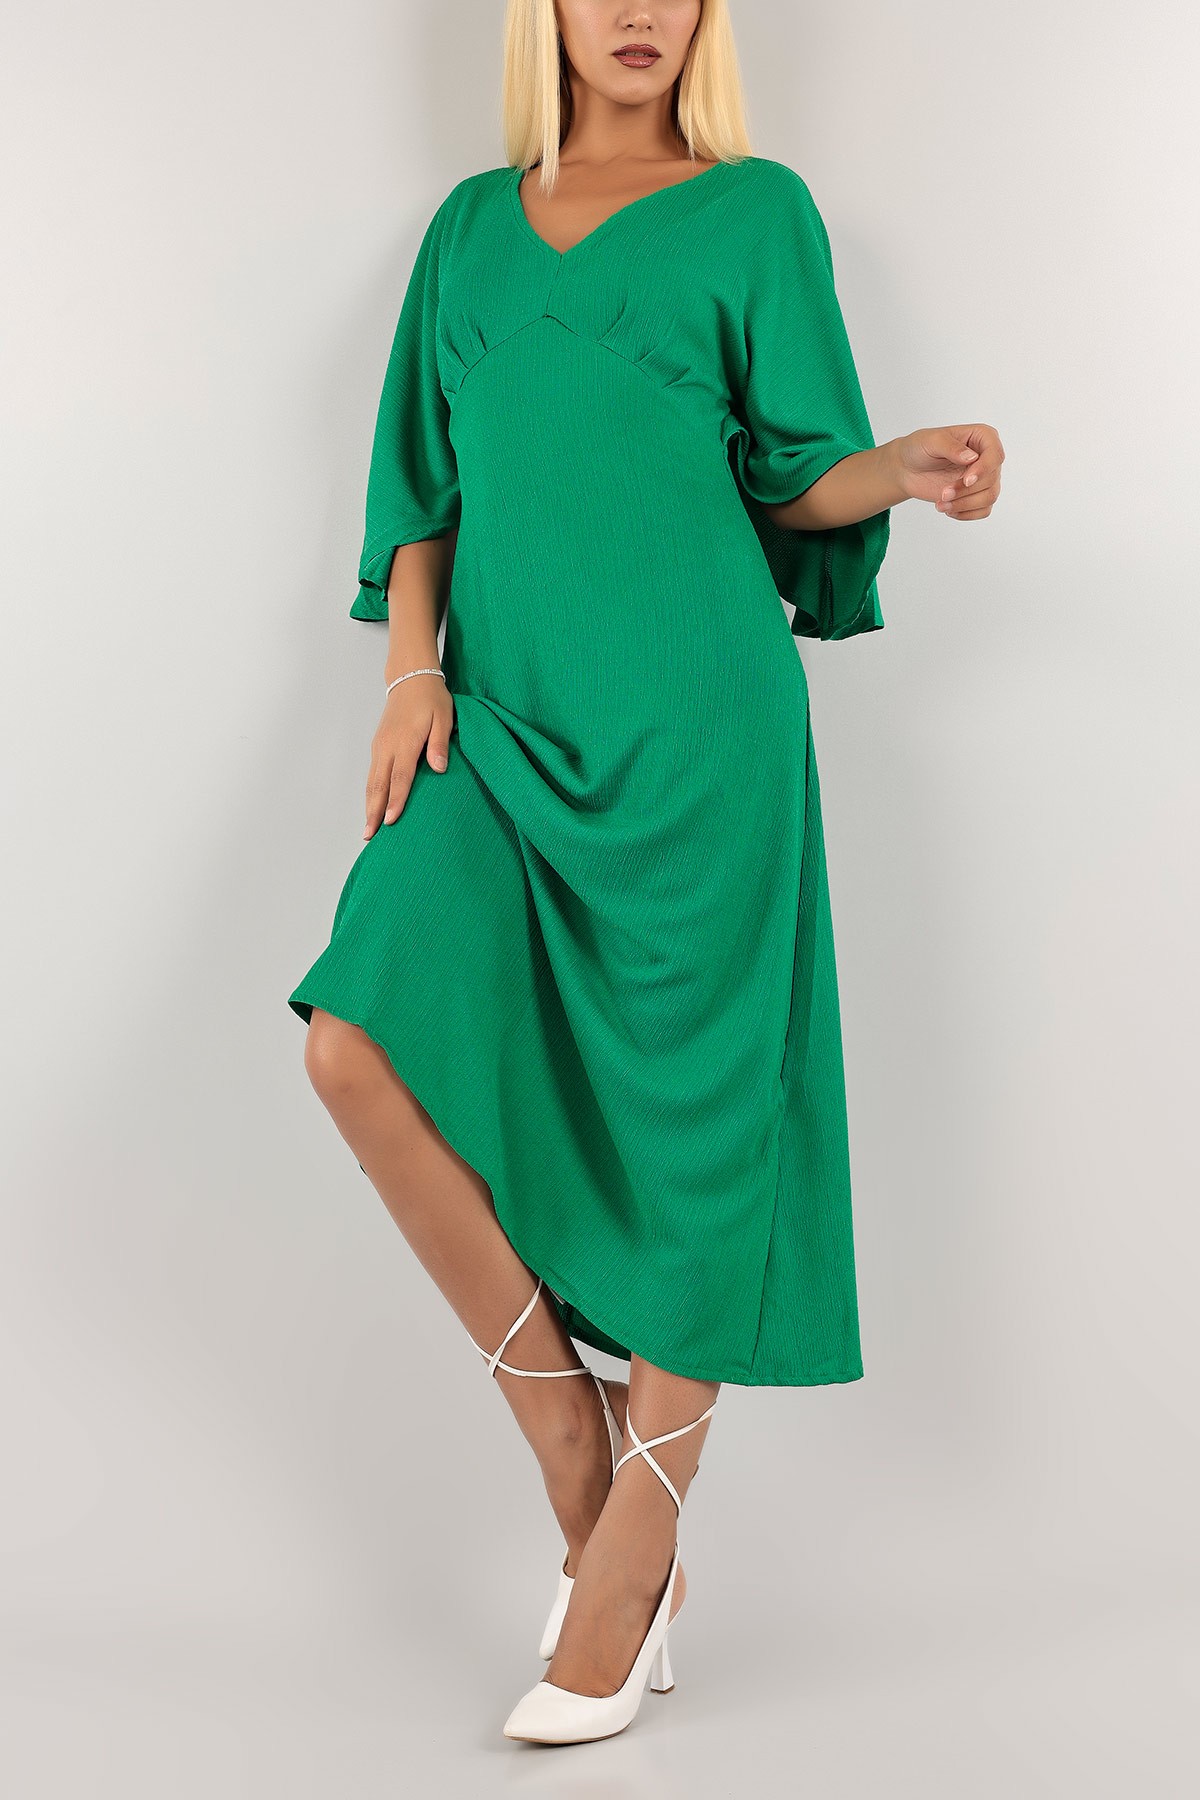 Yeşil Krinkıl Kumaş Elbise 128600